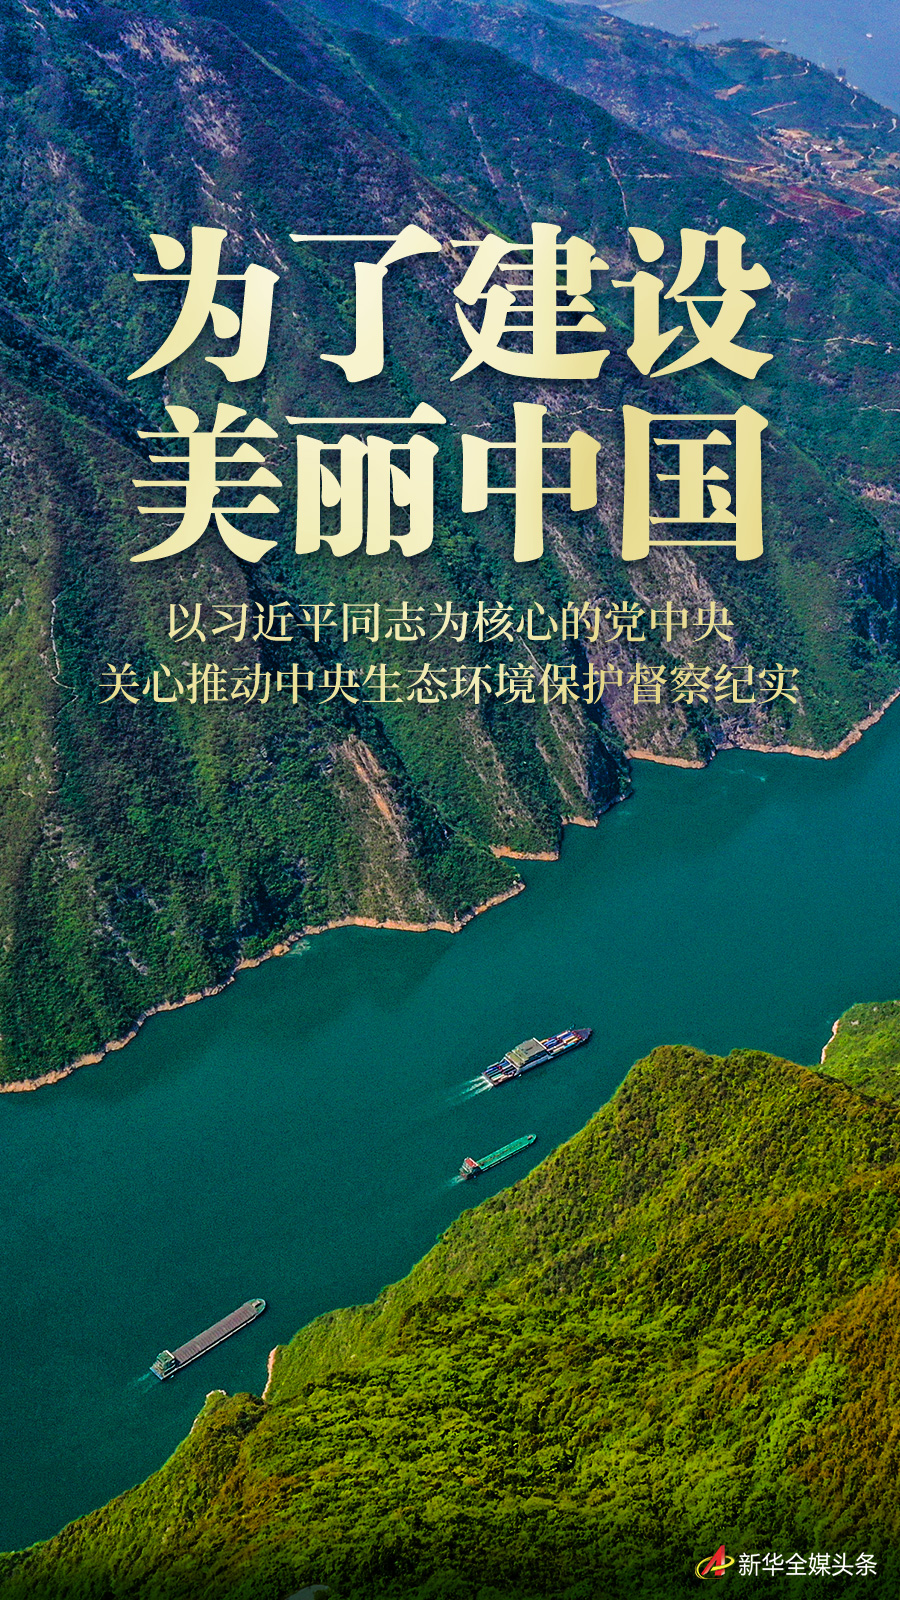 为了建设美丽中国——以习近平同志为核心的党中央关心推动中央生态环境保护督察纪实(图1)